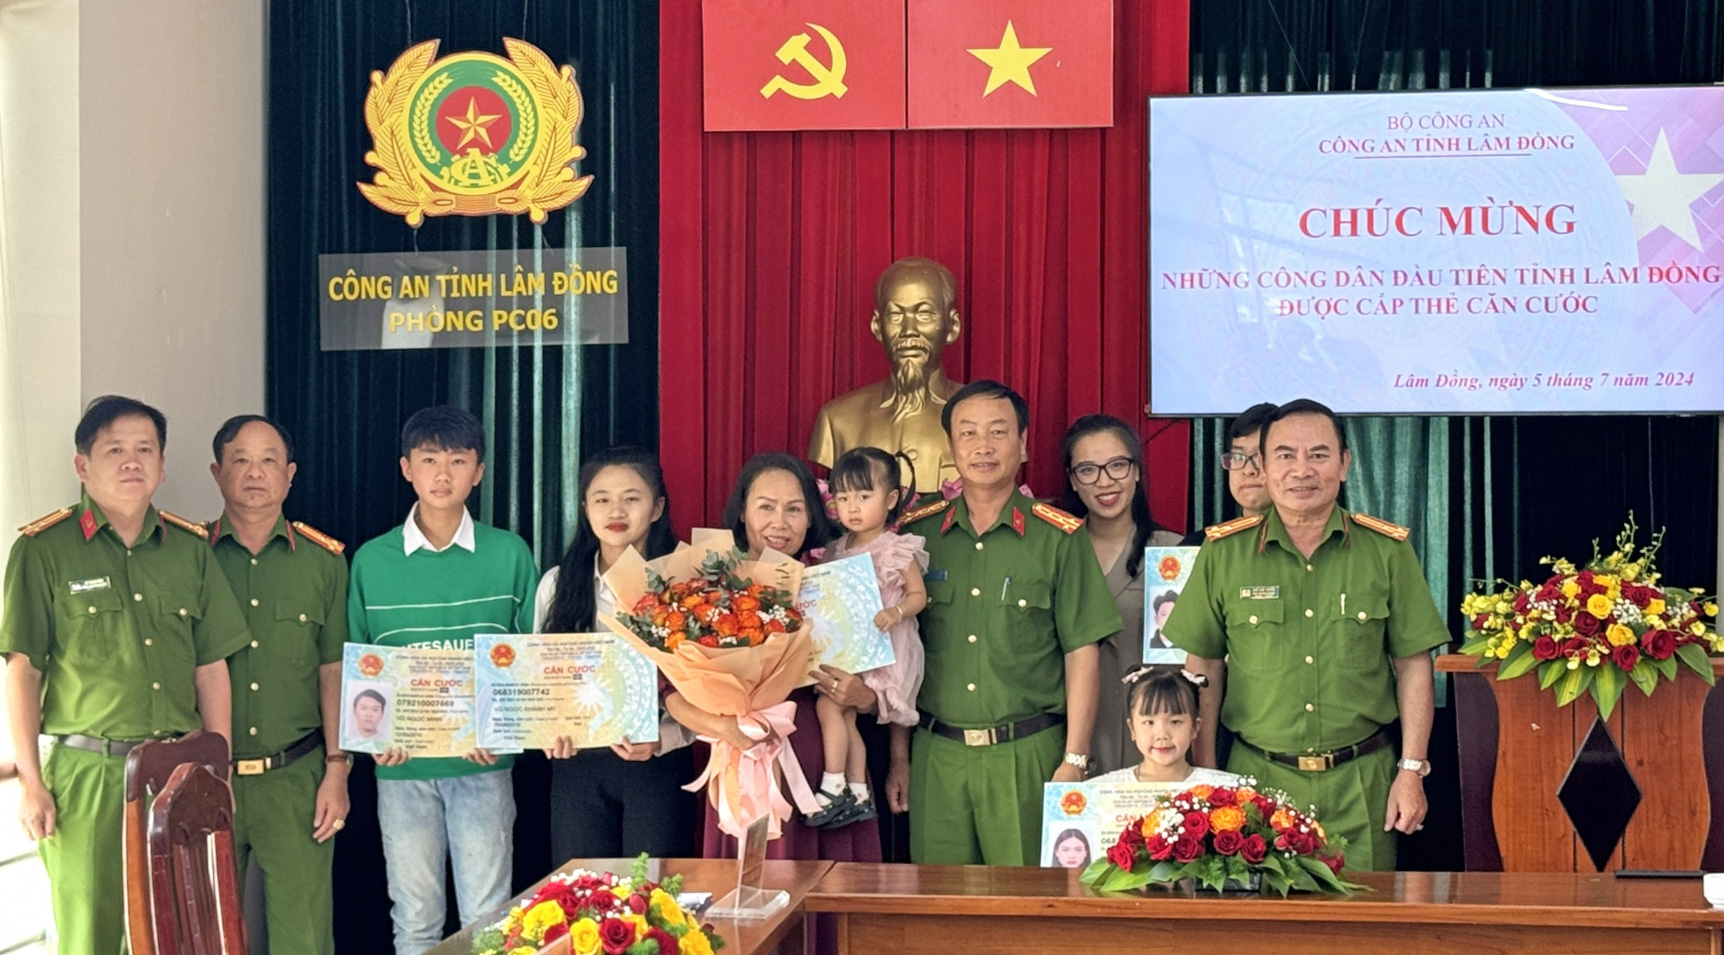 Đại tá Bùi Đức Thịnh - Phó Giám đốc Công an tỉnh Lâm Đồng và lãnh đạo Phòng Quản lý Hành chính trật tự xã hội Công an tỉnh trao Thẻ căn cước cho 5 công dân đầu tiên